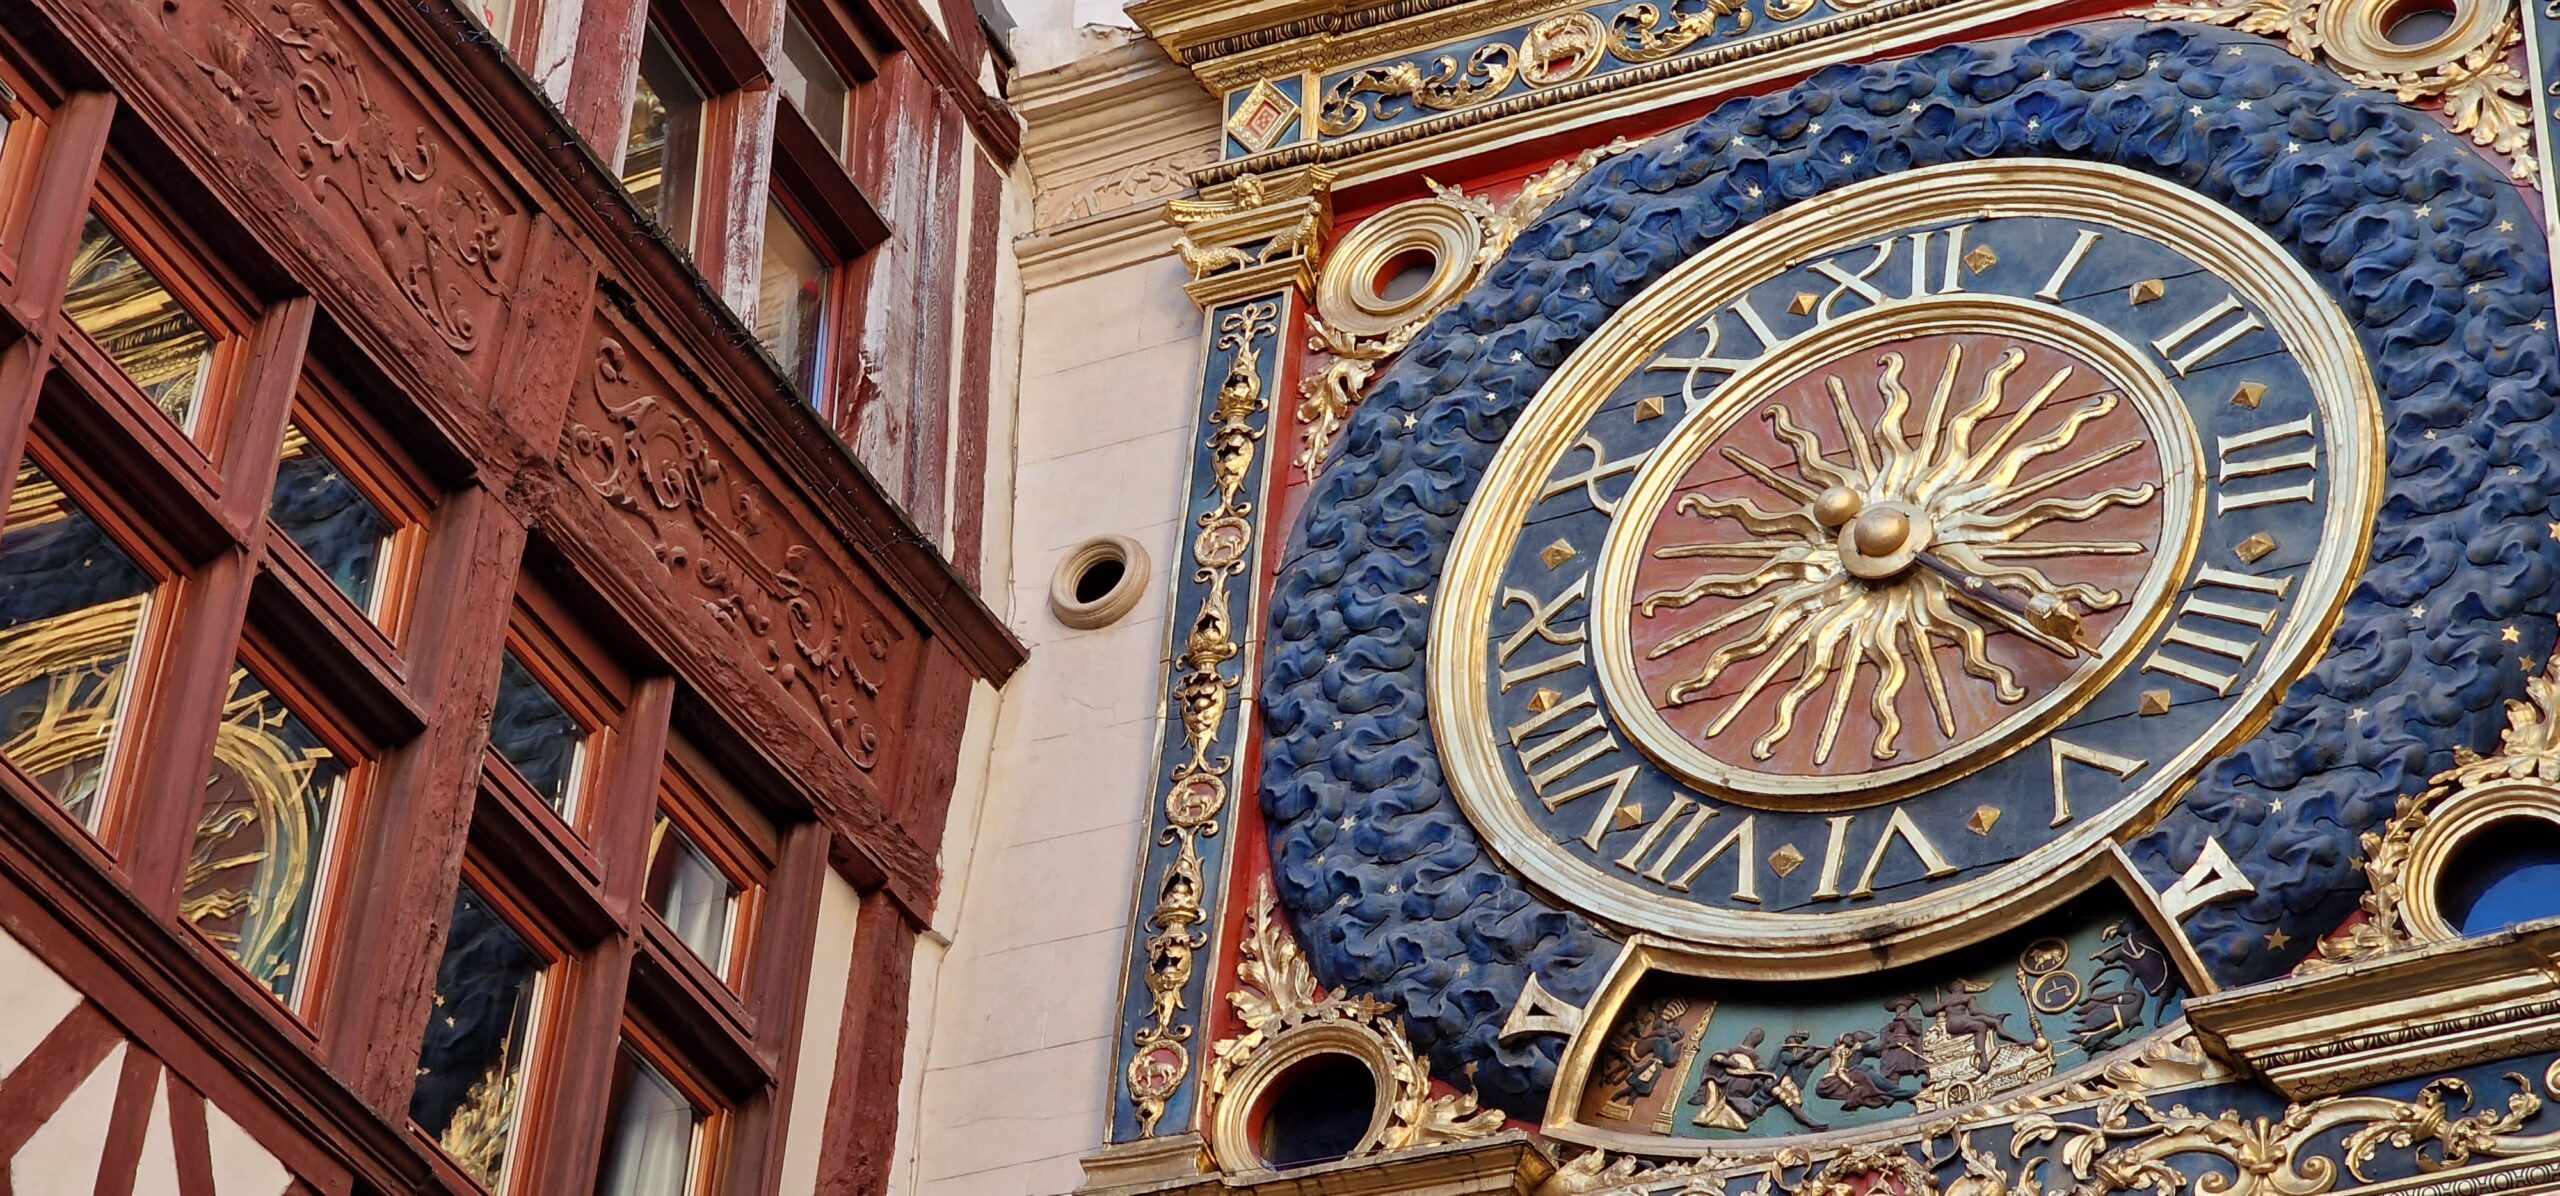 Le gros horloge de Rouen : l'horloge historique qui a inspiré Big Ben